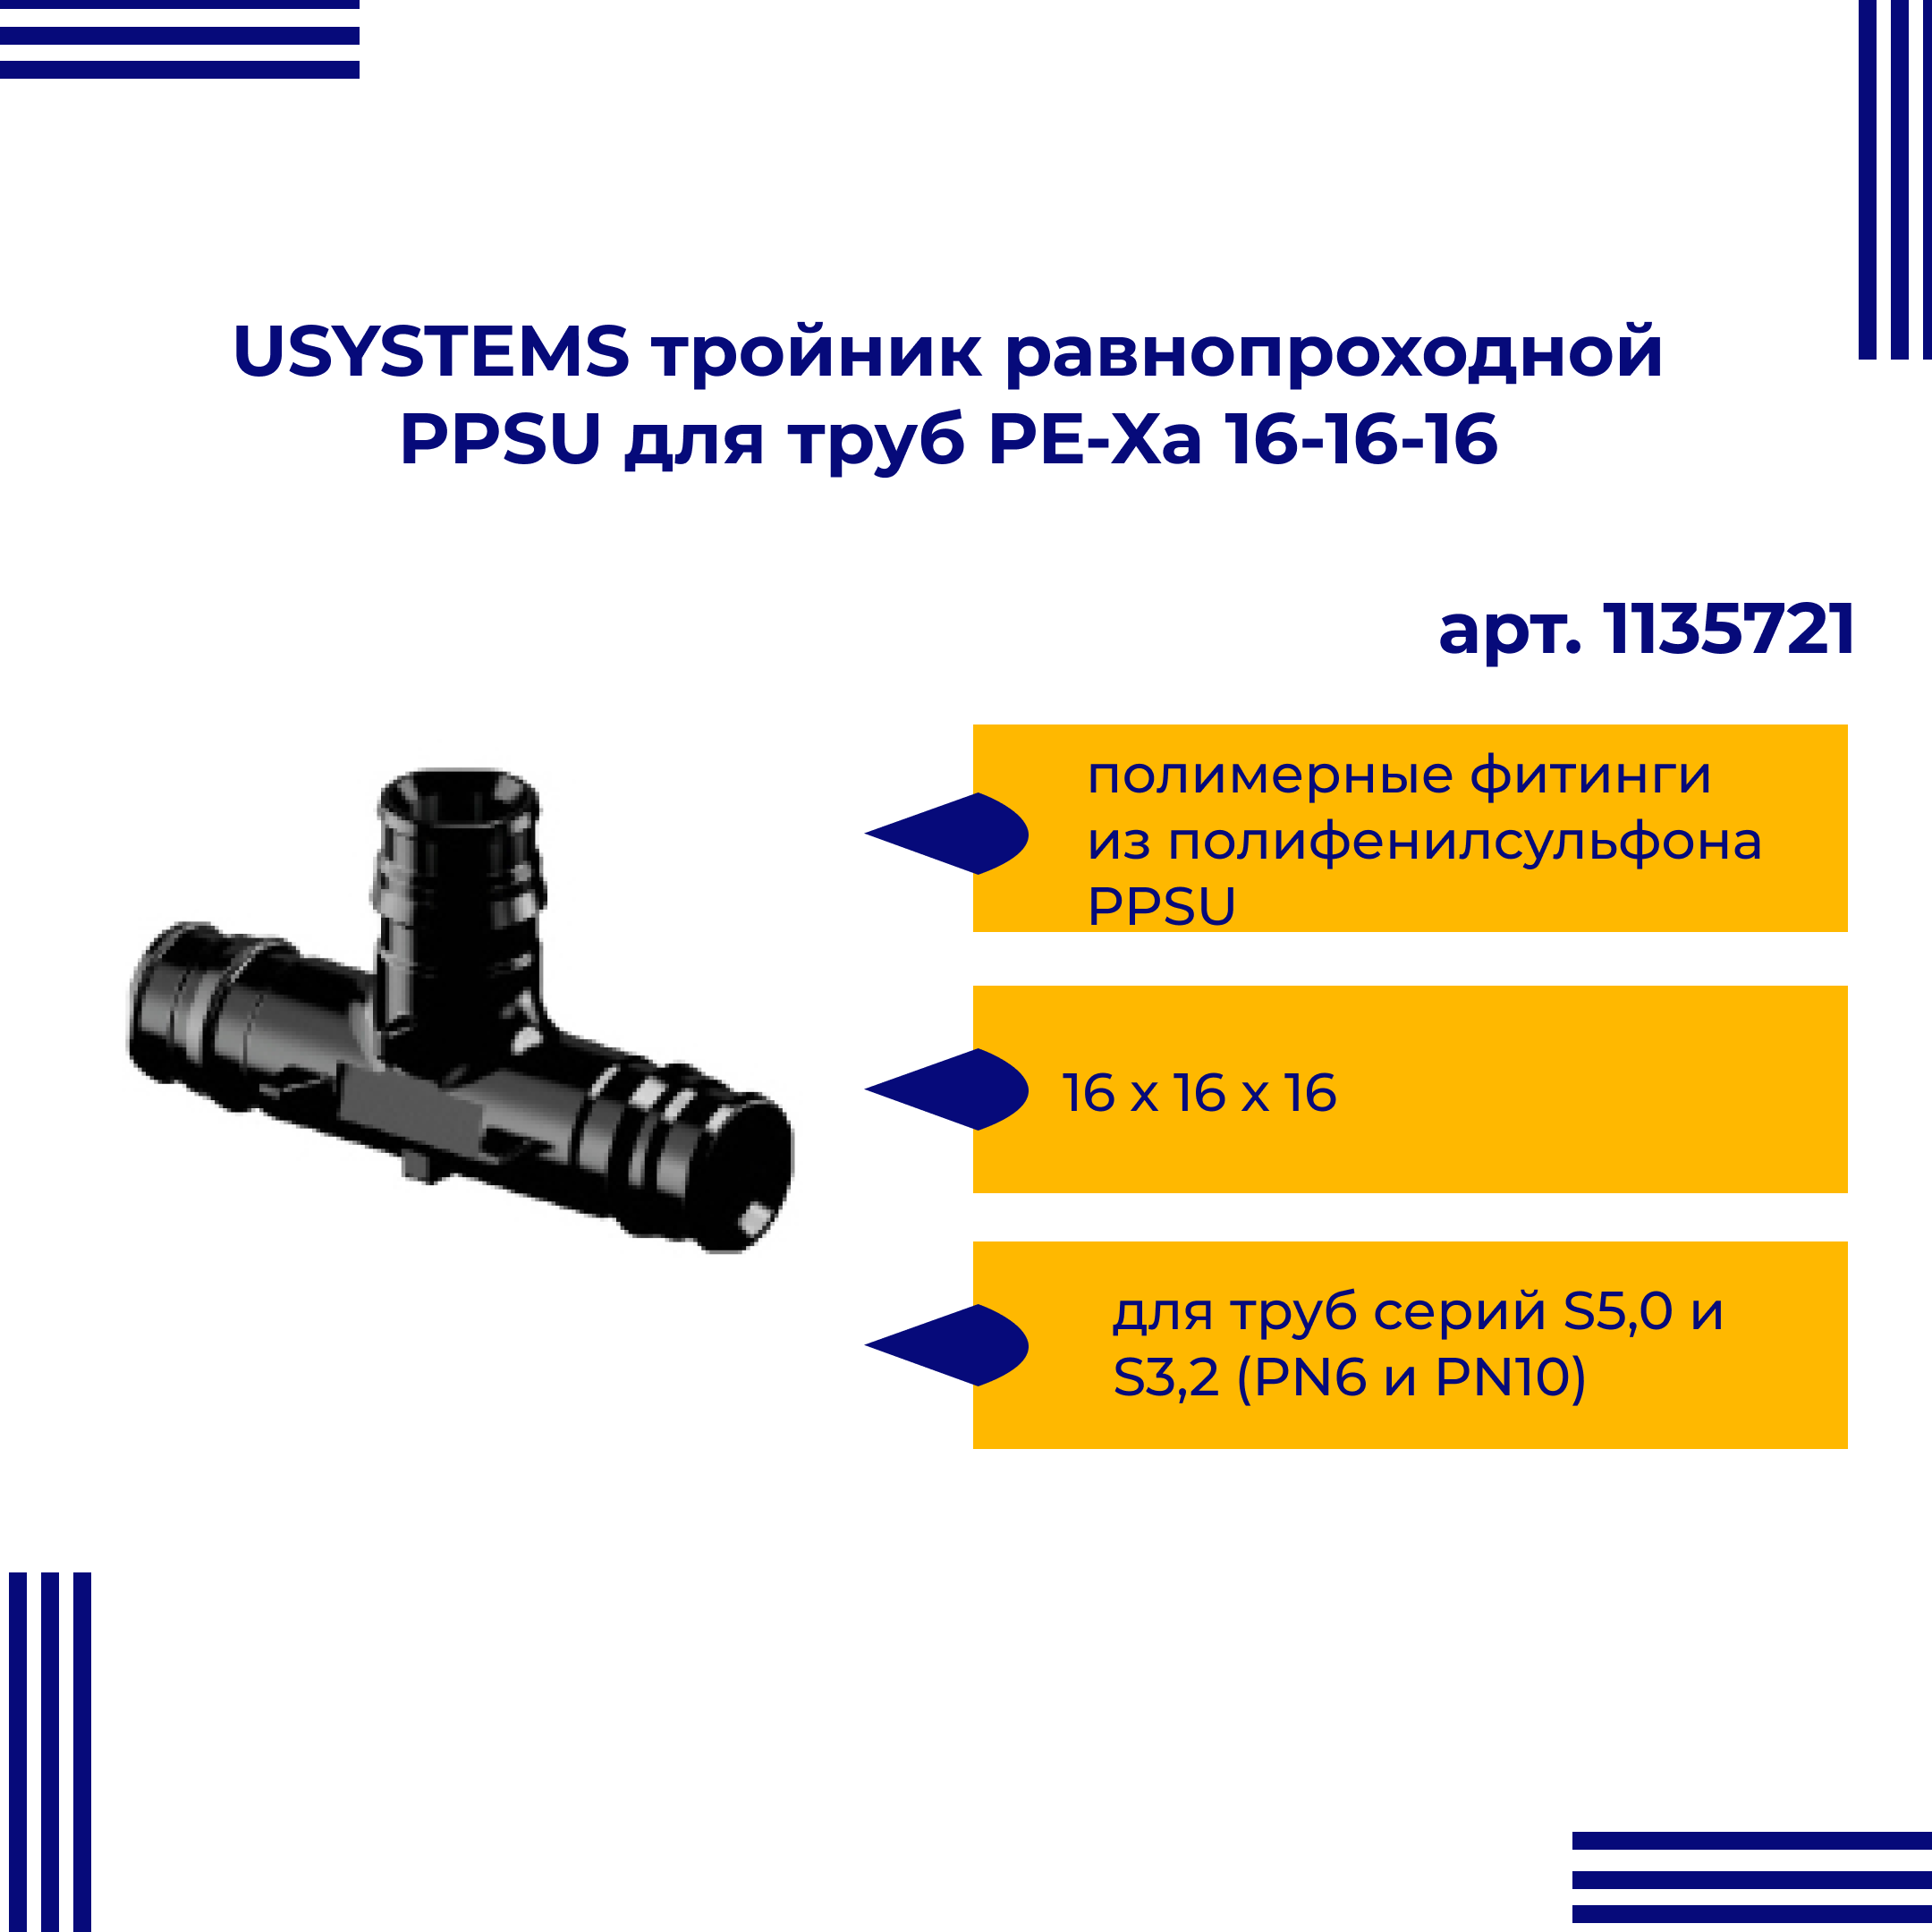 Тройник PPSU USYSTEMS равнопроходной для труб PE-Xa 16-16-16 1135721